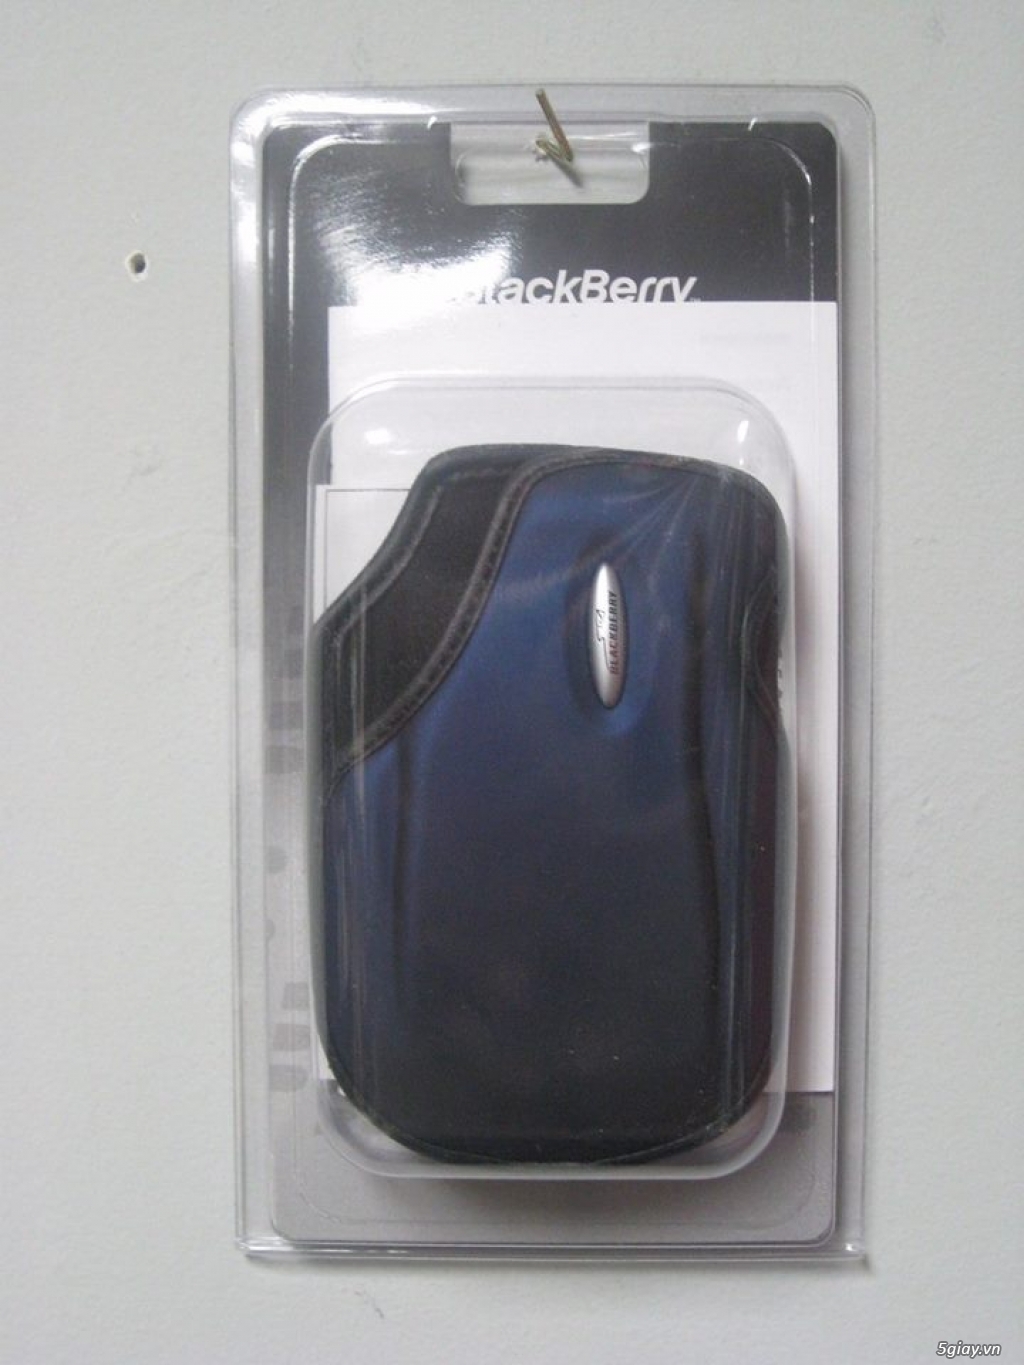 Dock Blackberry - 9